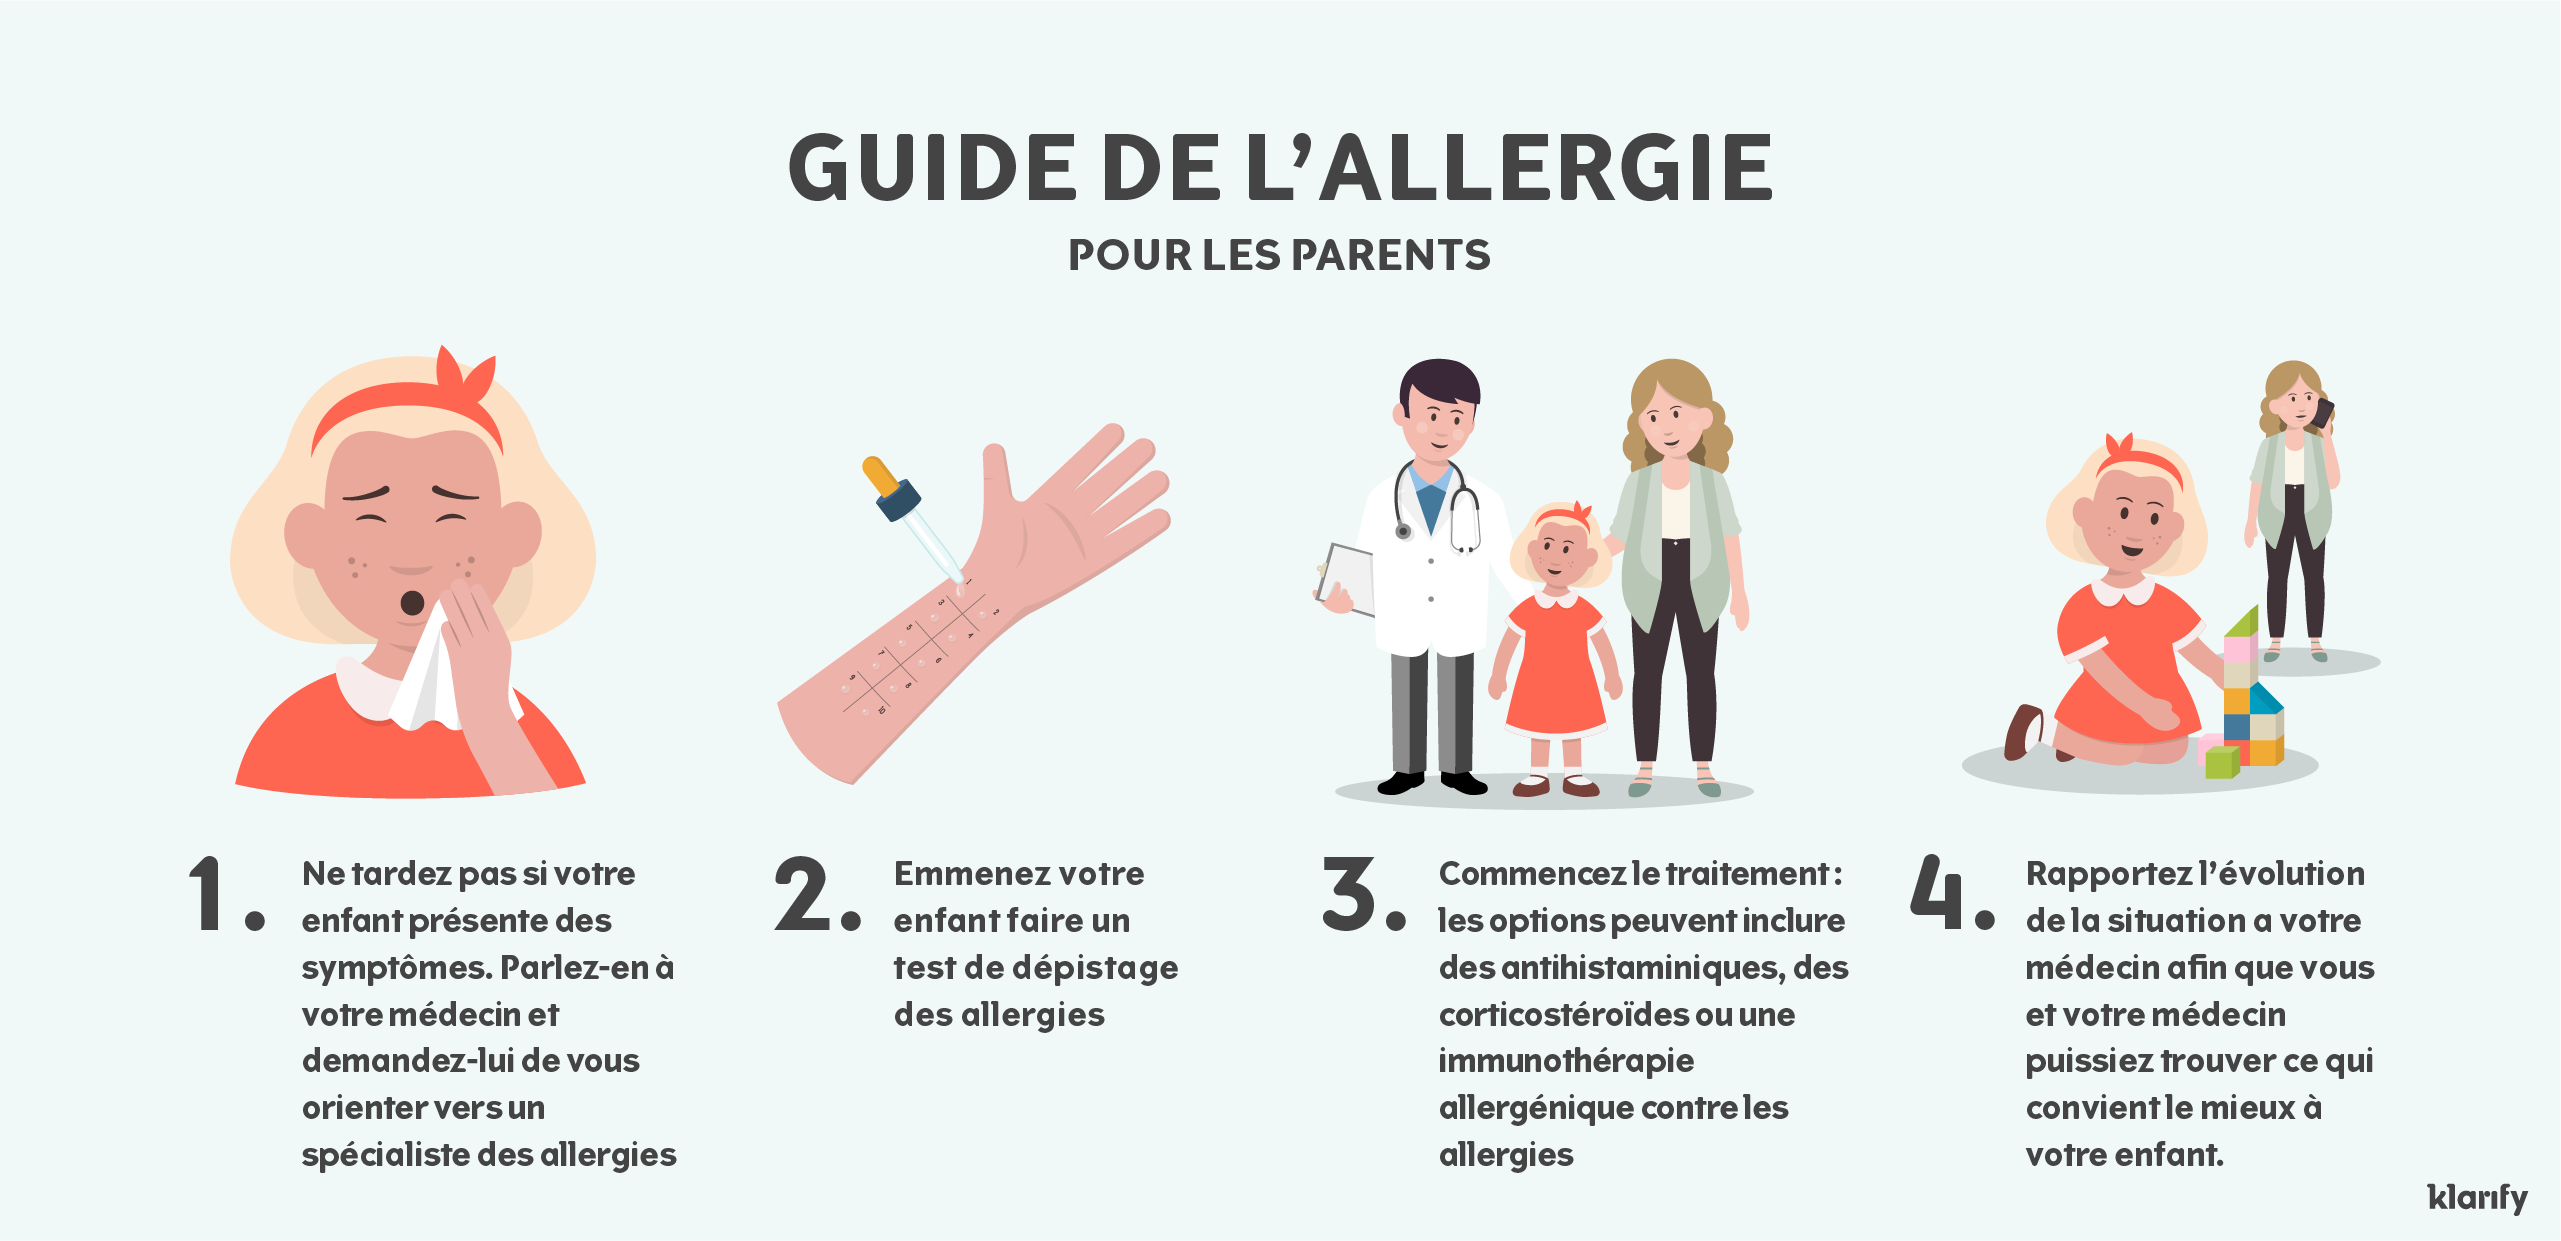 Infographie sur la manière dont les enfants présentant des symptômes d’allergie sont diagnostiqués et traités. Détails de l’infographie ci-dessous